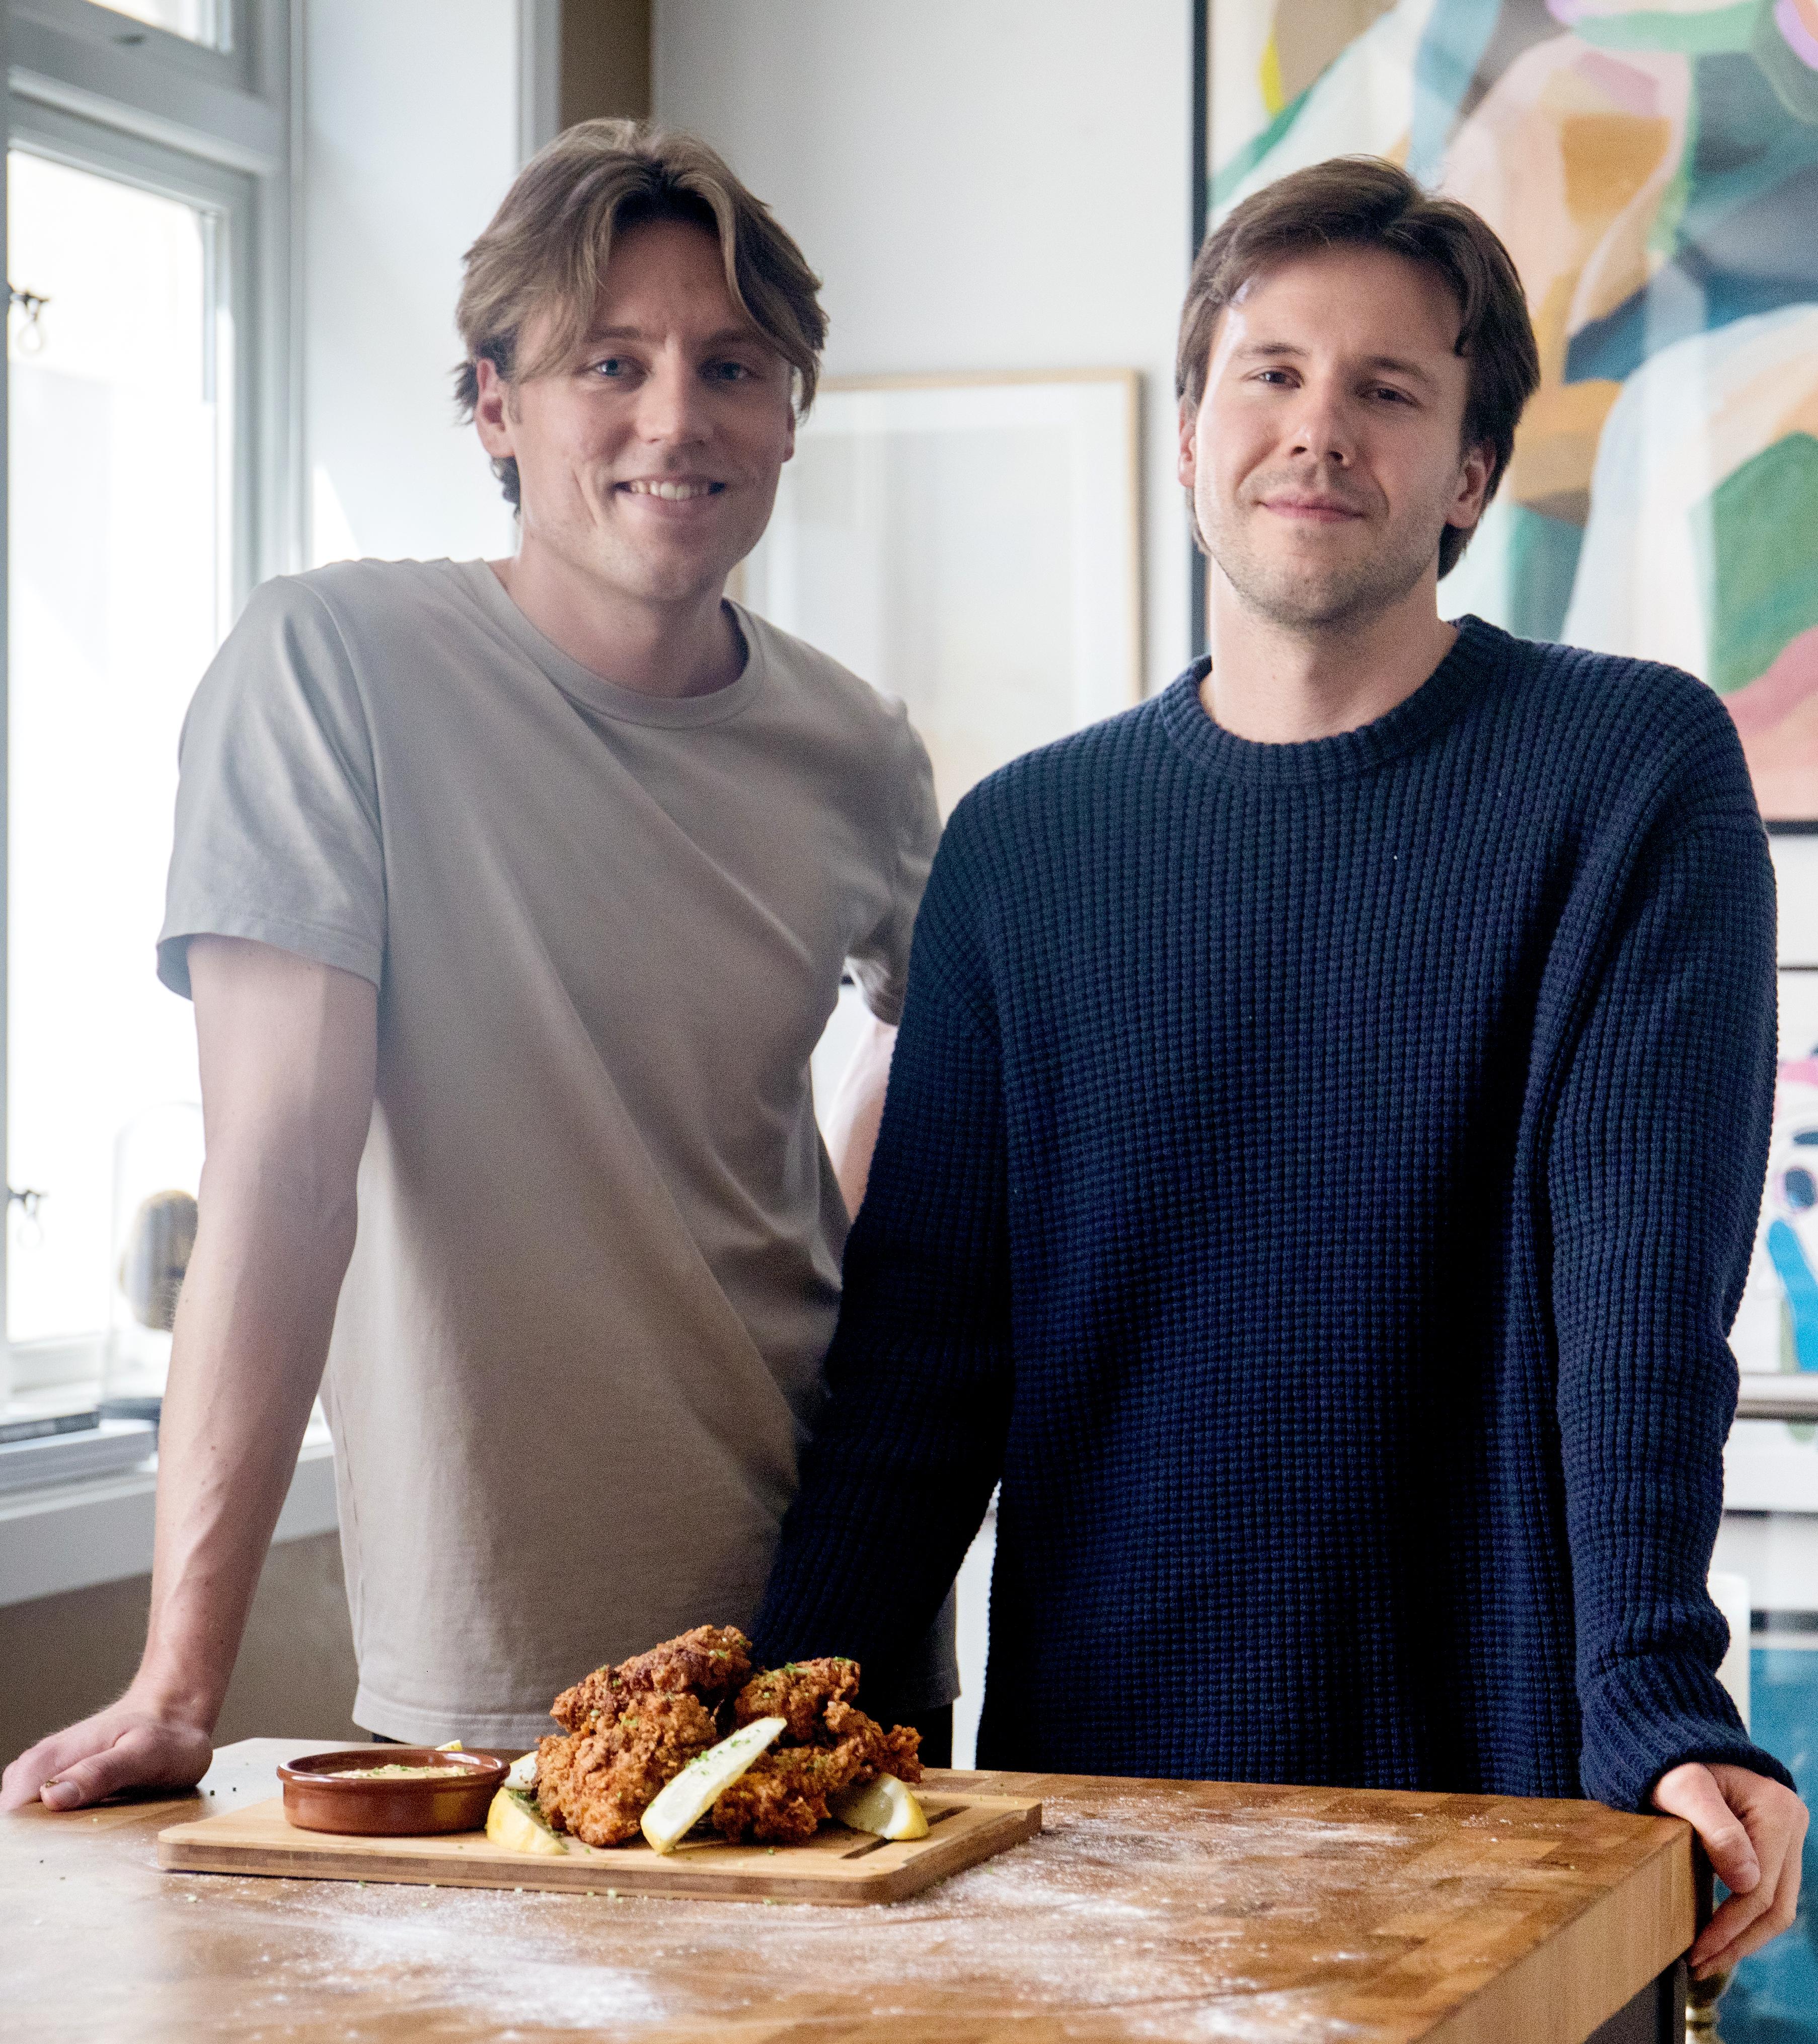 SULTENT PAR: Magnus og Ole, også kjent som Sultne gutter, har nylig gitt ut sin andre kokebok.